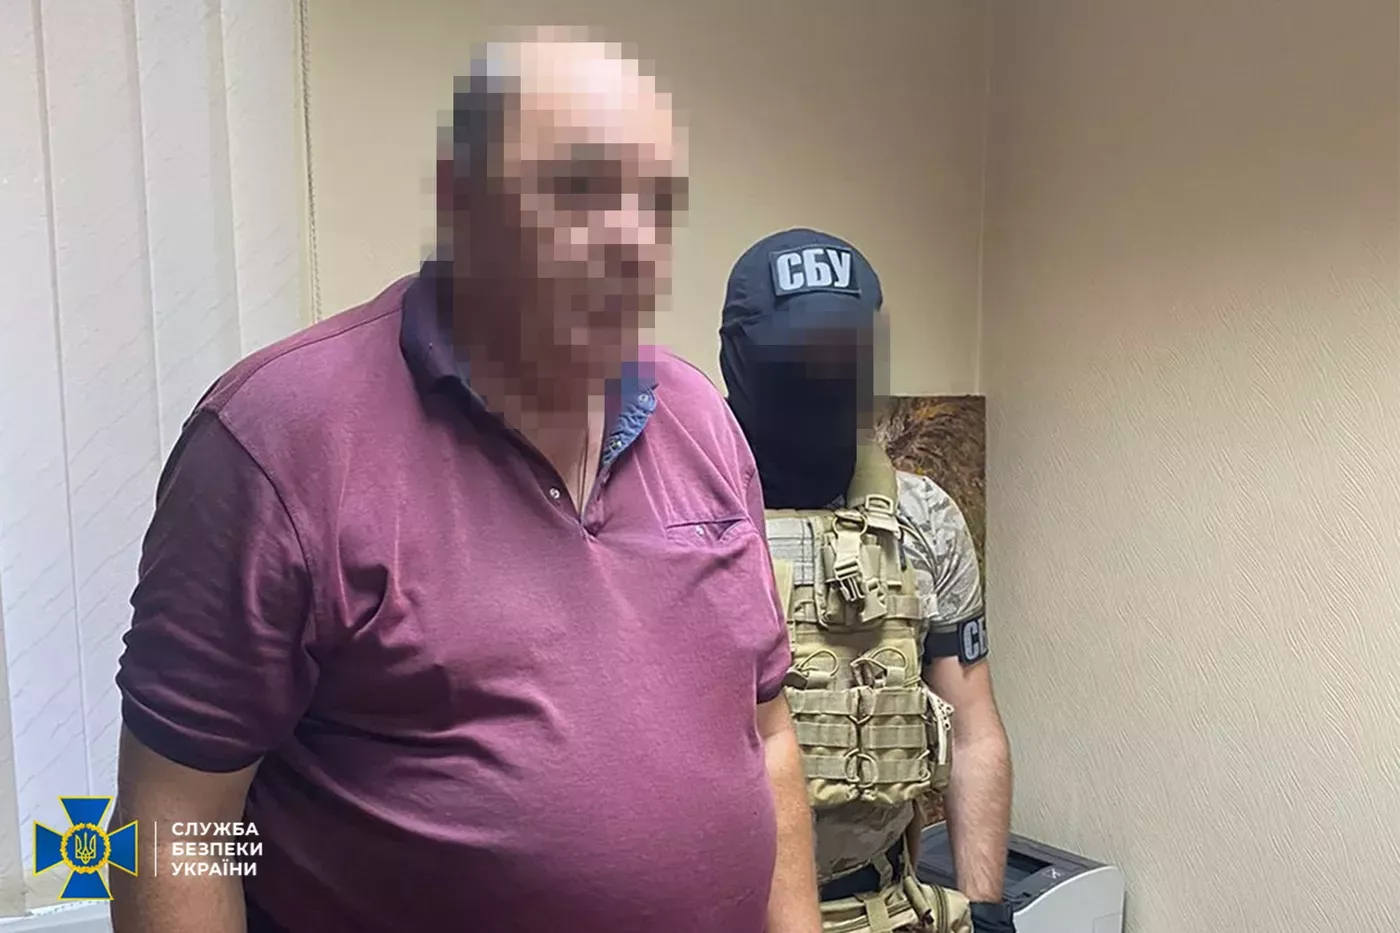 Ексадвоката-блогера, який називав Єрмака «агентом ФСБ», відправили під цілодобовий домашній арешт ФОТО